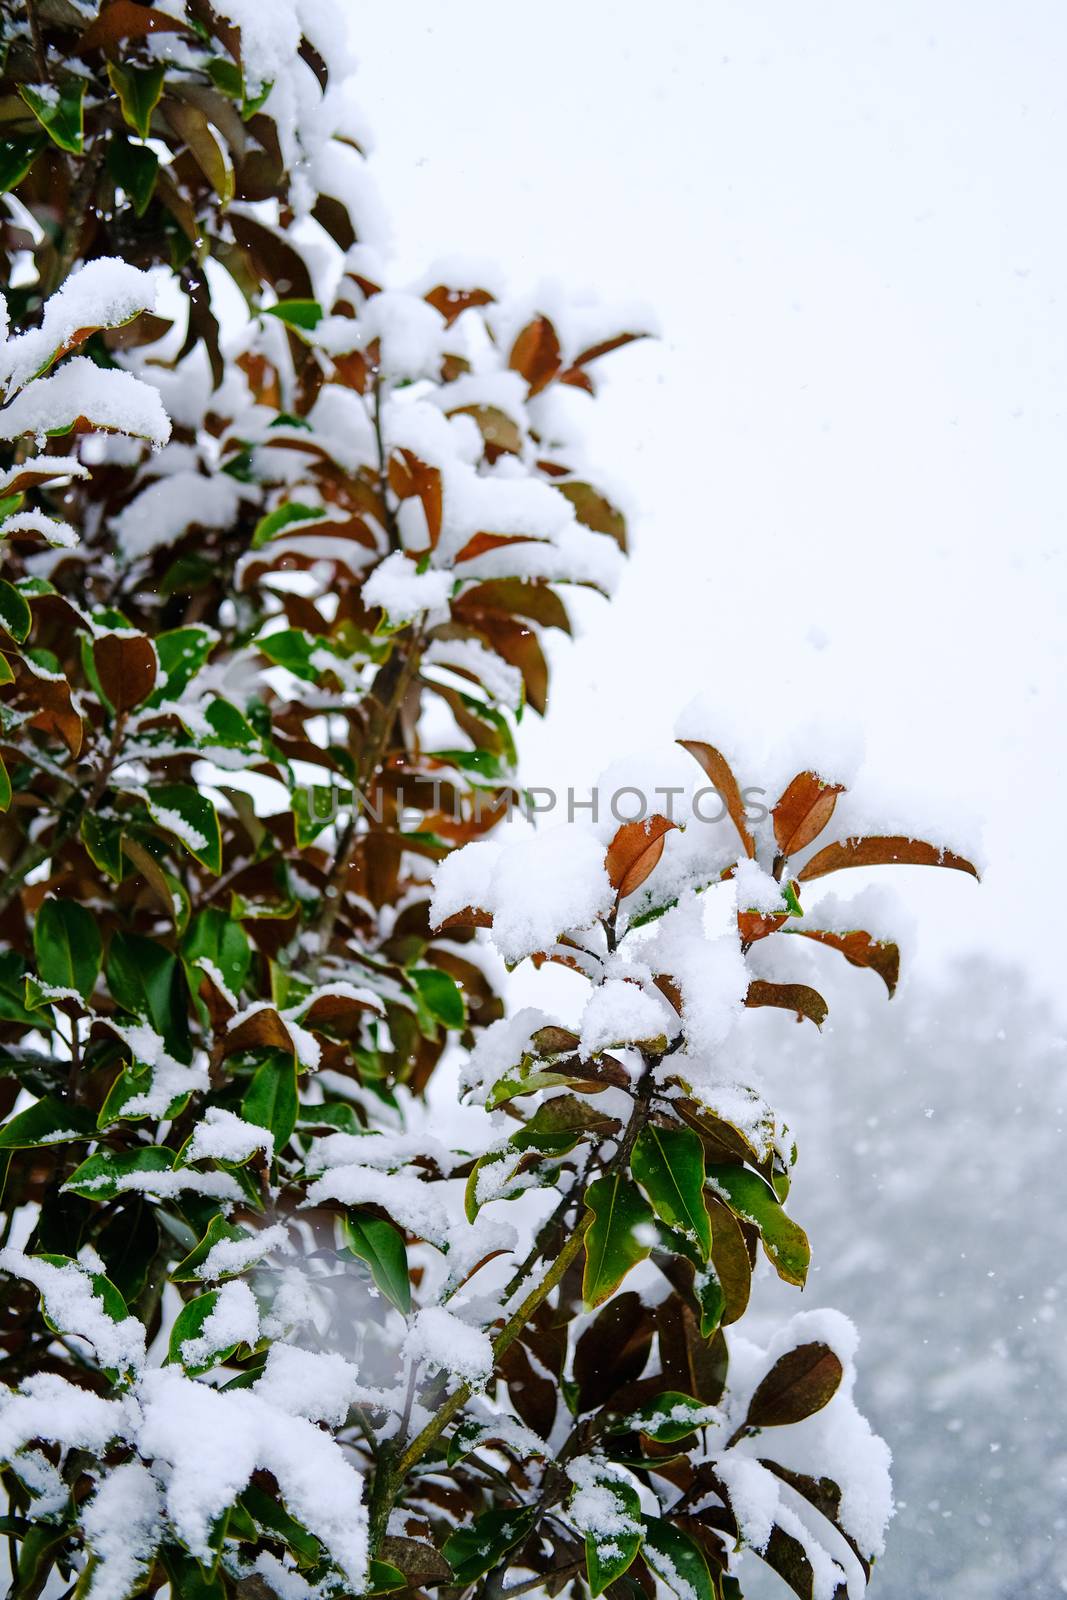 Snowflakes on Winter Shrub by dbvirago